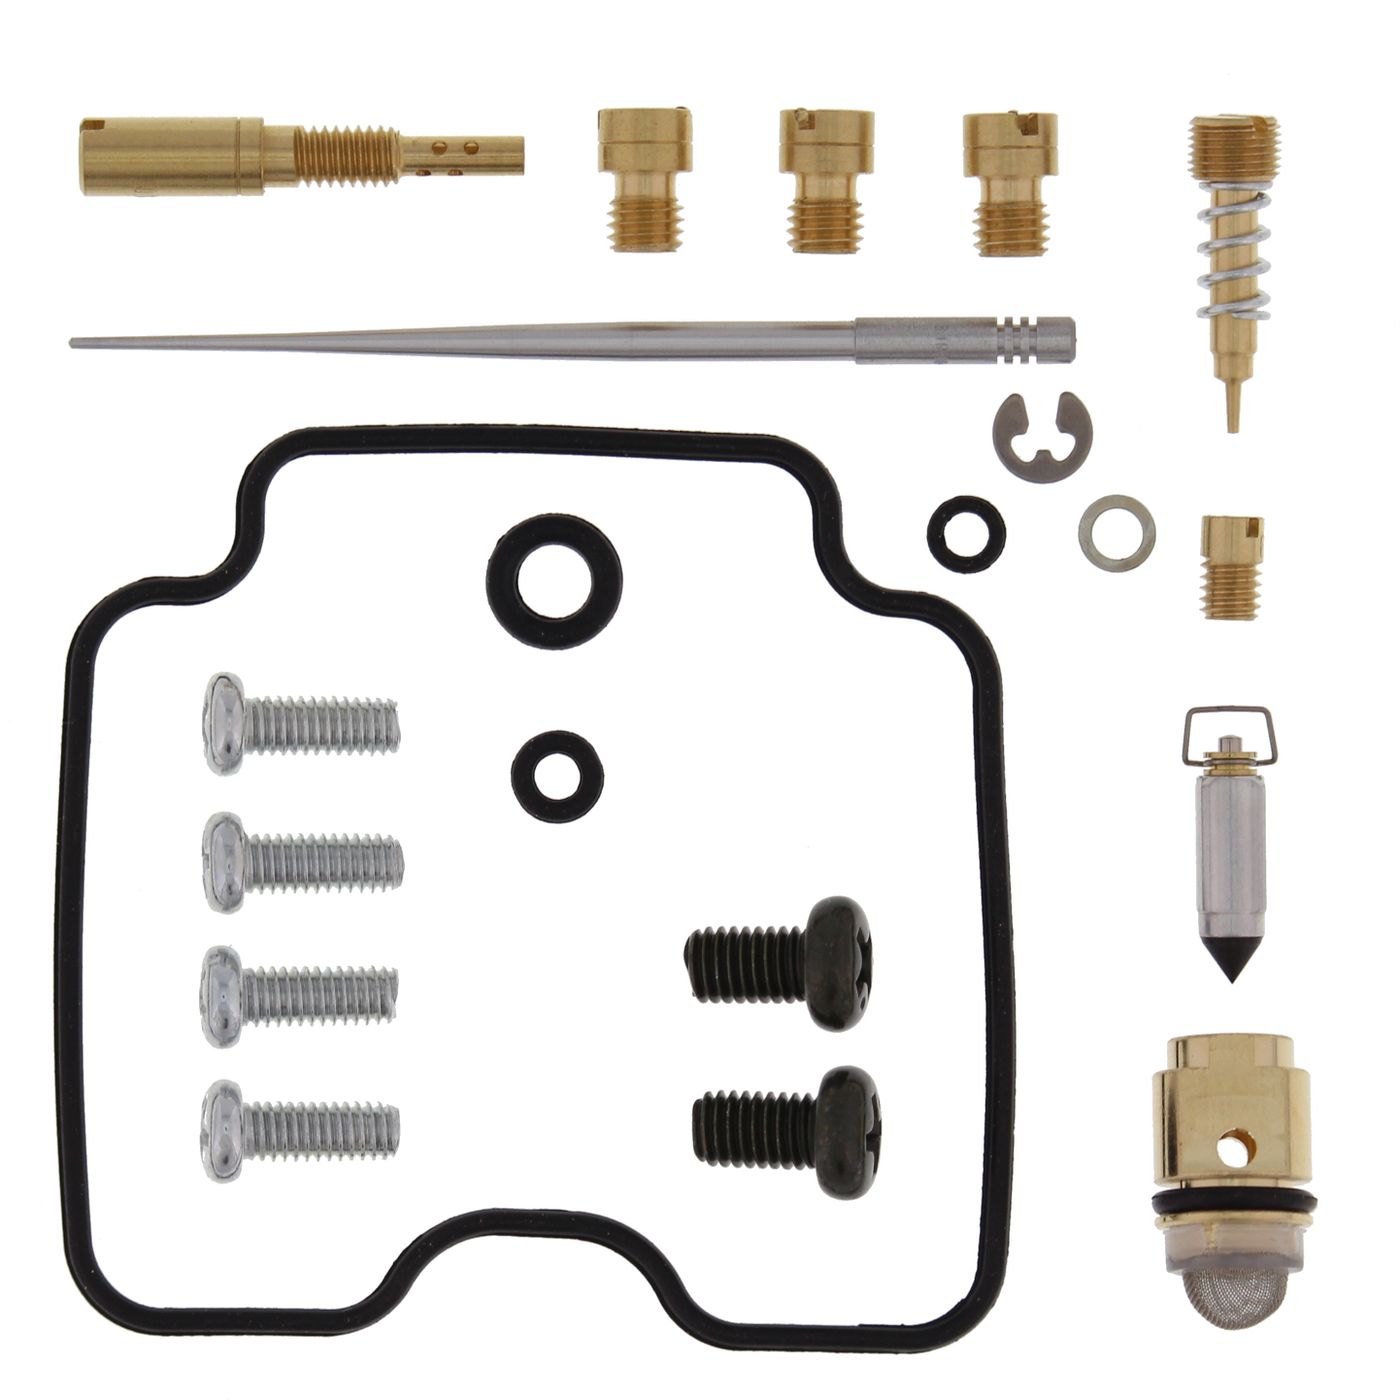 Wrp Carb Repair Kits - WRP261507 image